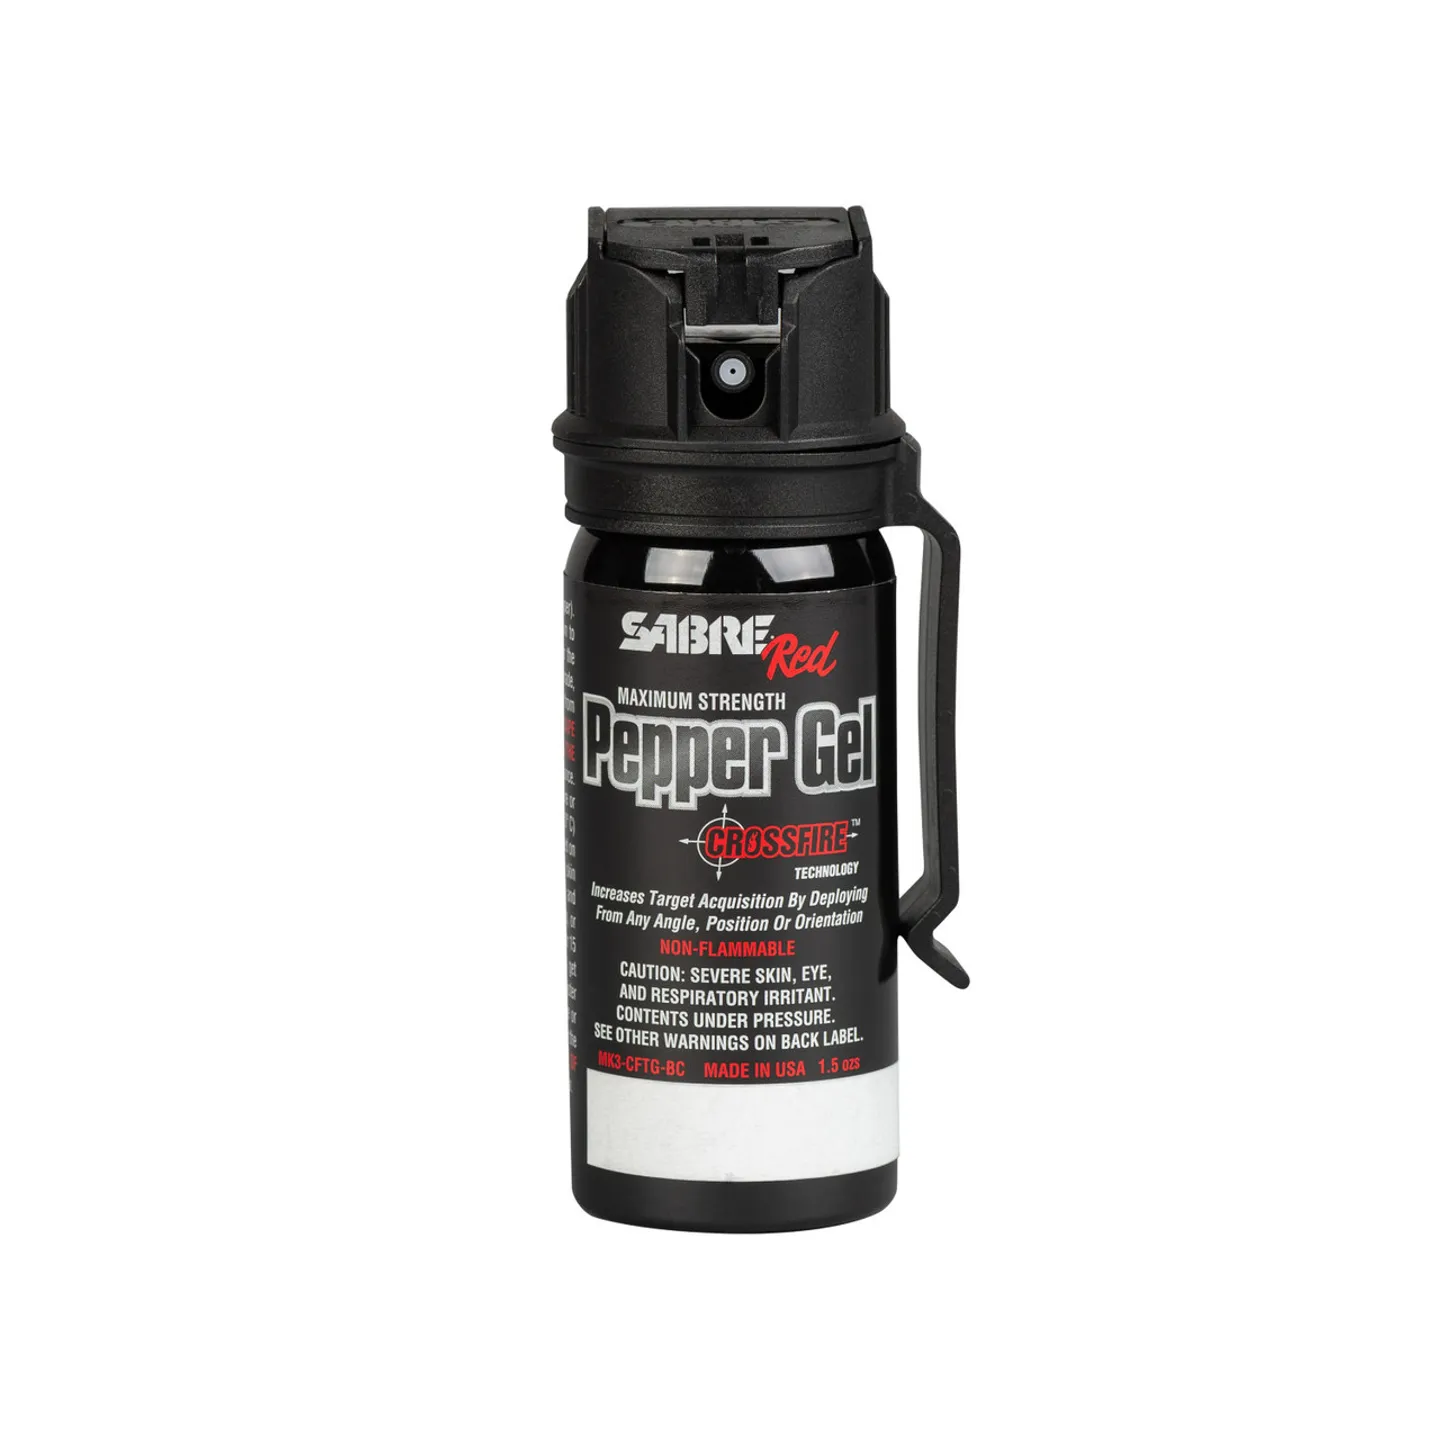 Tränengas - Starker 2-in-1 Selbstverteidigungsspray - MK3 Crossfire - Inhalt 54 ml